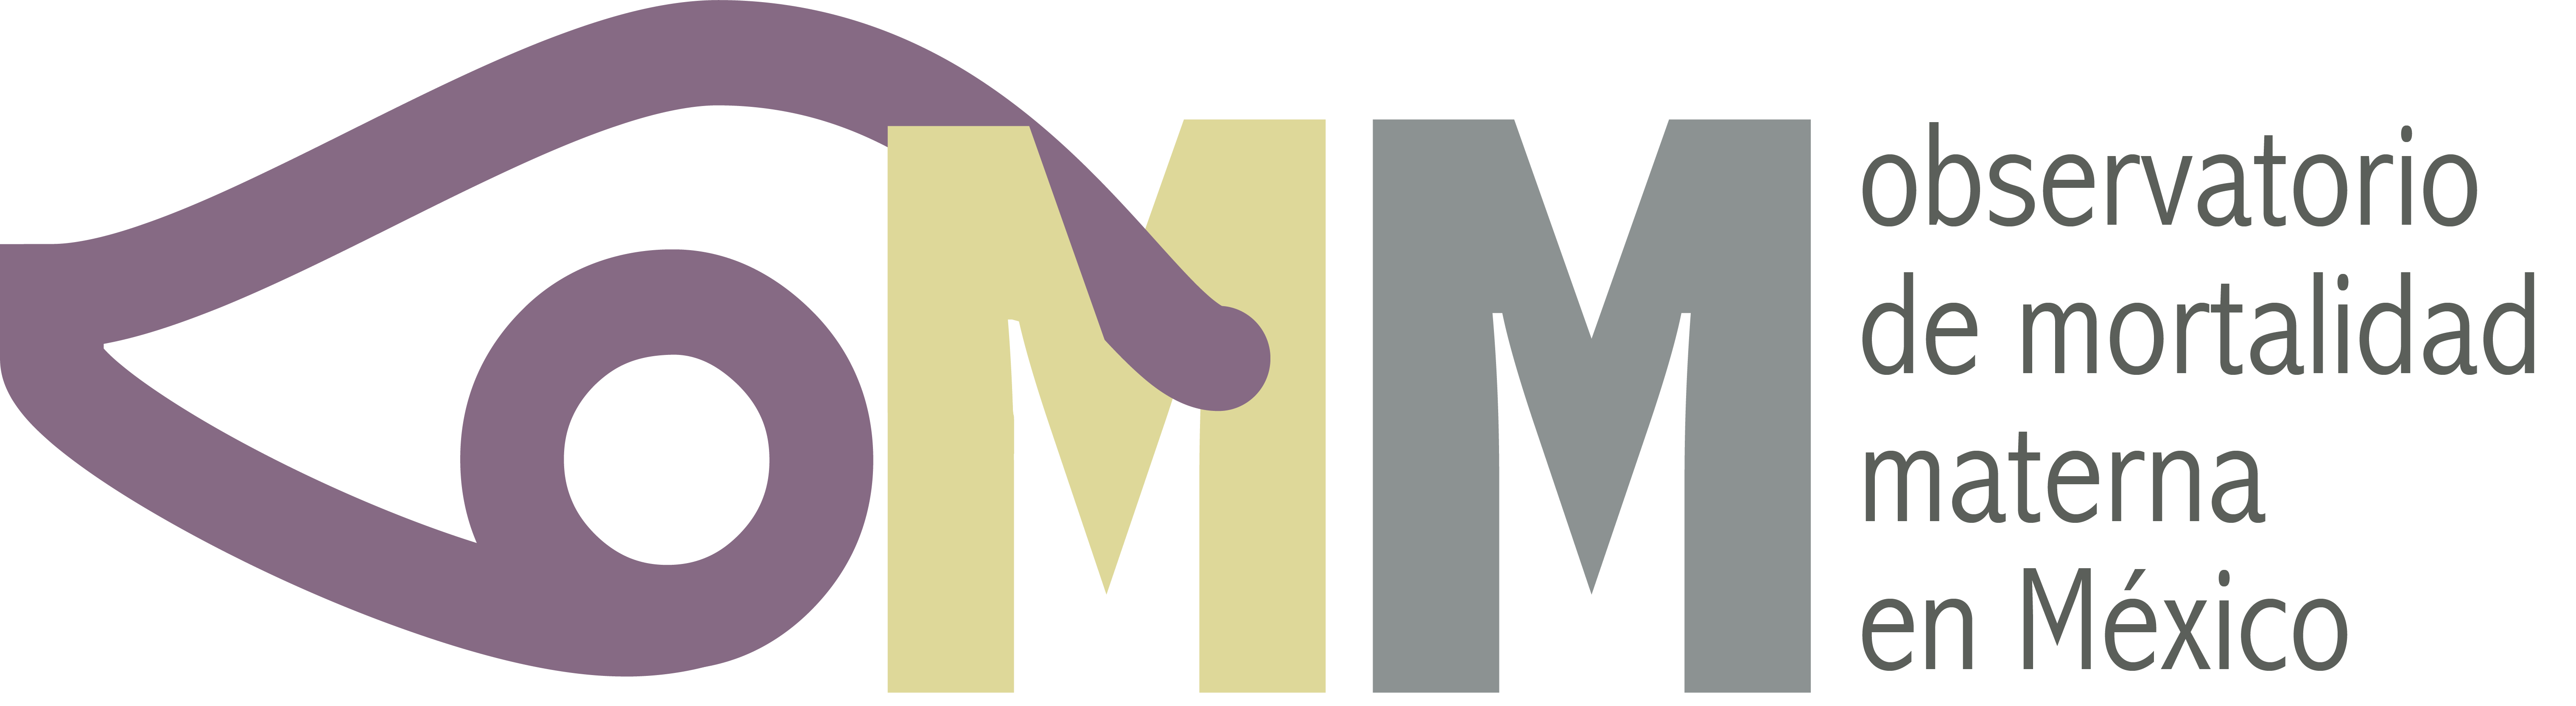 OMM Logo - Observatorio de Mortalidad Materna (OMM) - Logo - Girls Not Brides